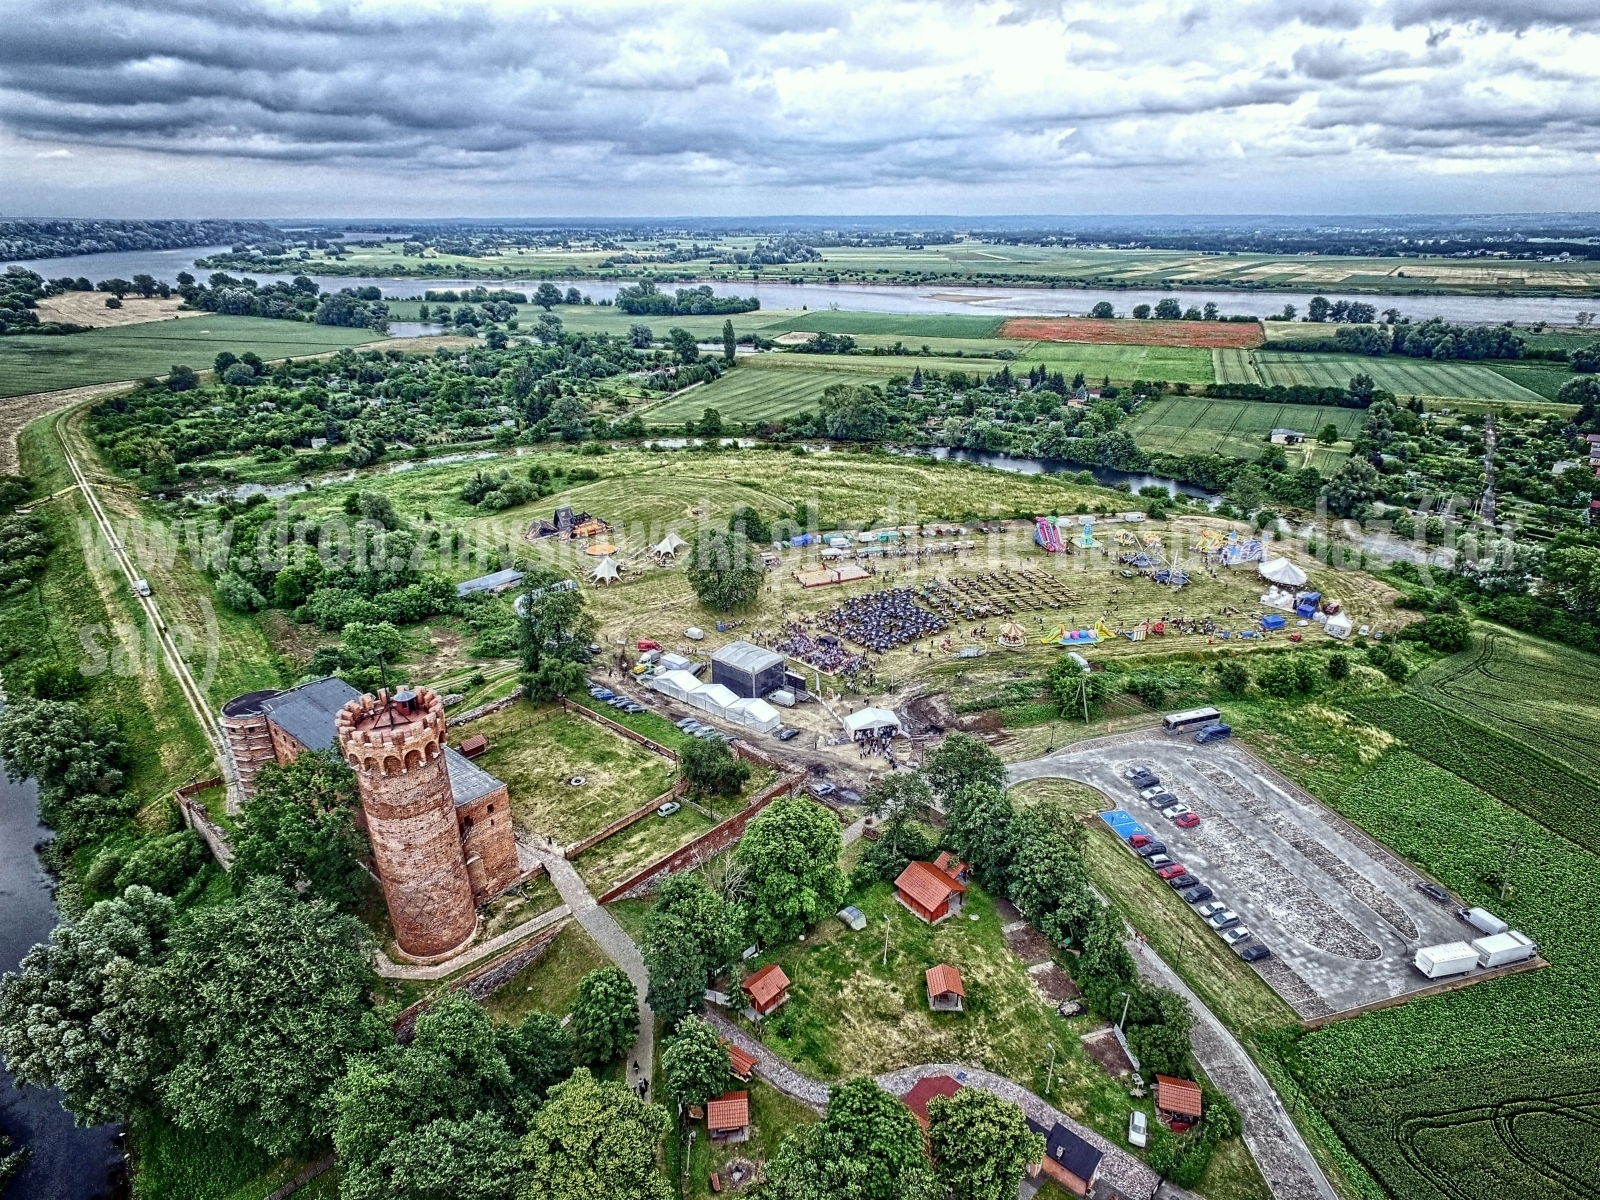 2017-06-24-lot-dronem-na-Dniu-Papiernika-i-swietowanie-Jubileuszu-50-lecia-022_HDR